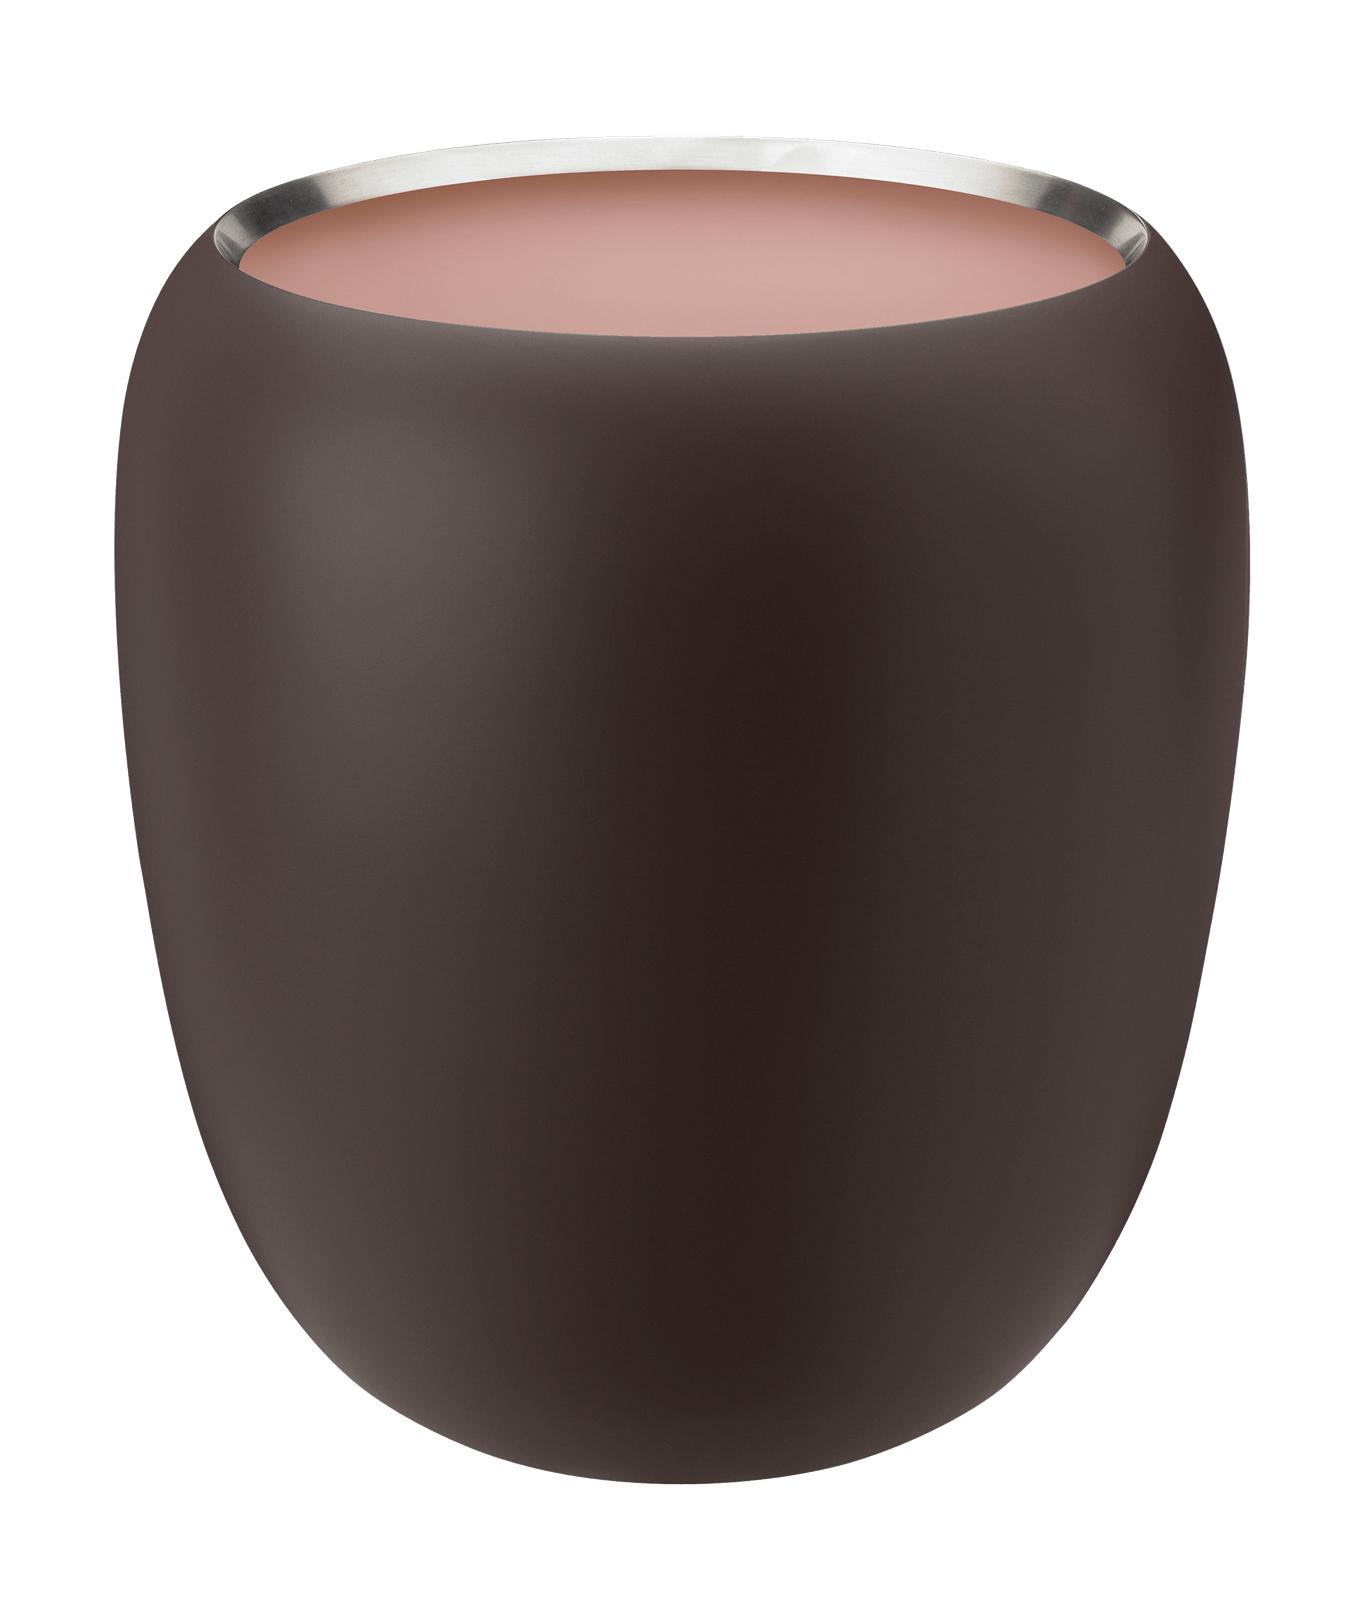 Stelton Ora Vase 21,6 cm, polvere scura